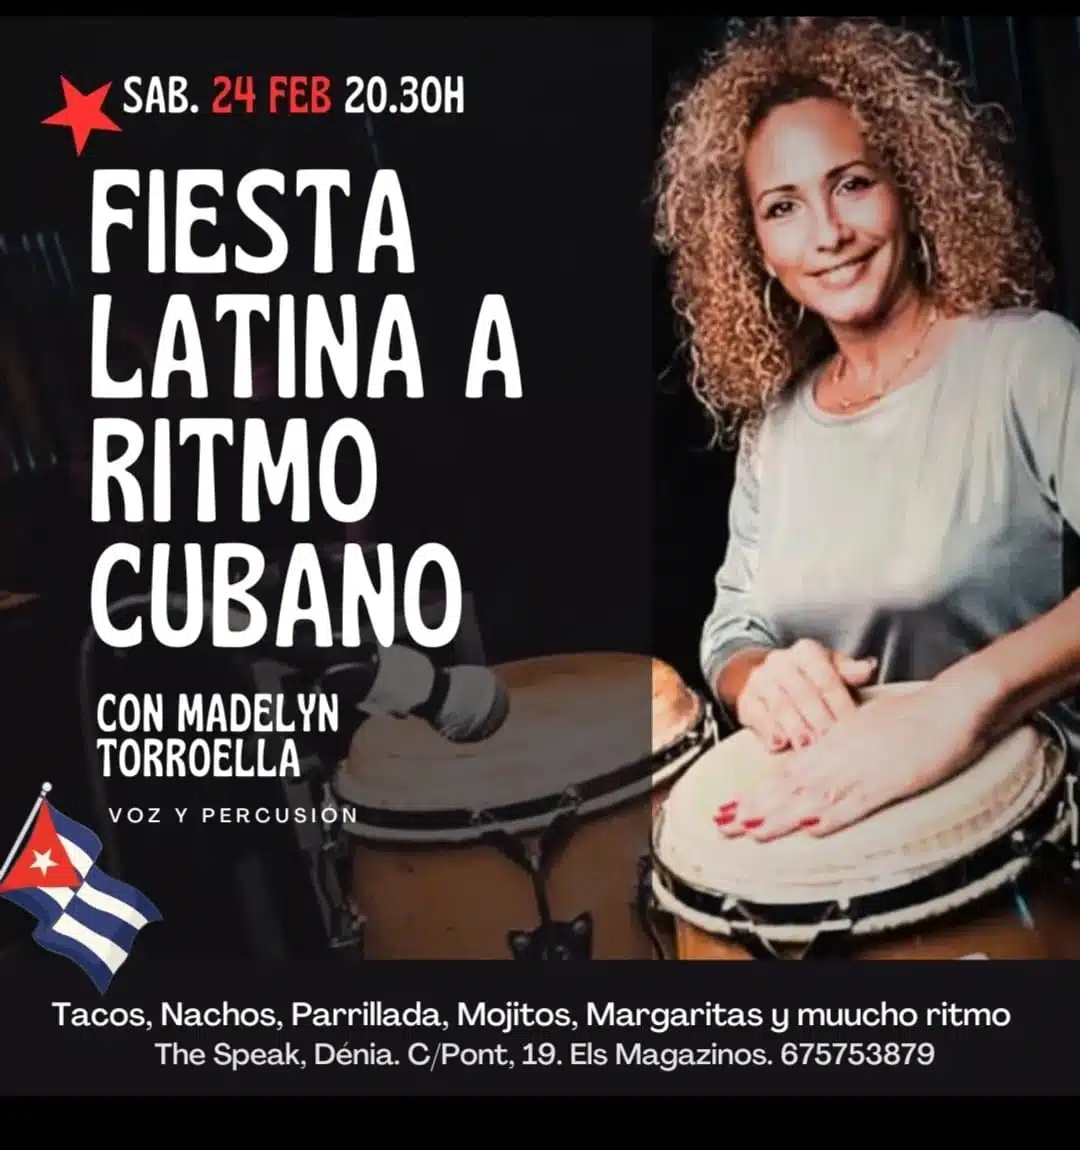 Fiesta latina a ritmo cubano